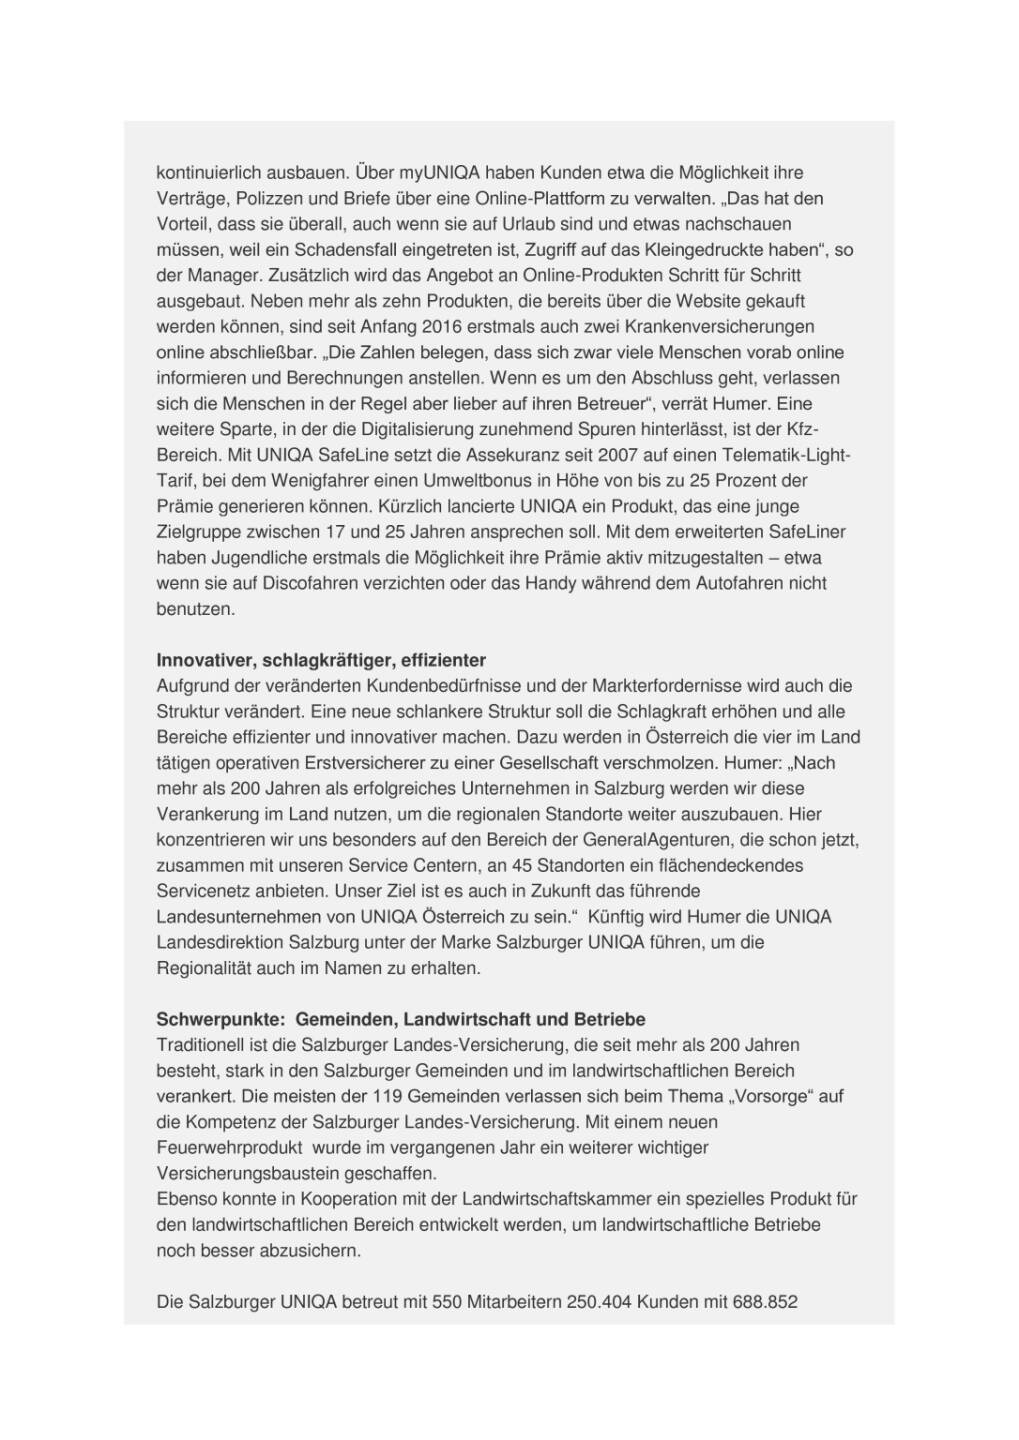 Uniqa: 2015 Nummer eins im Bundesland Salzburg, Seite 2/3, komplettes Dokument unter http://boerse-social.com/static/uploads/file_1164_uniqa_2015_nummer_eins_im_bundesland_salzburg.pdf